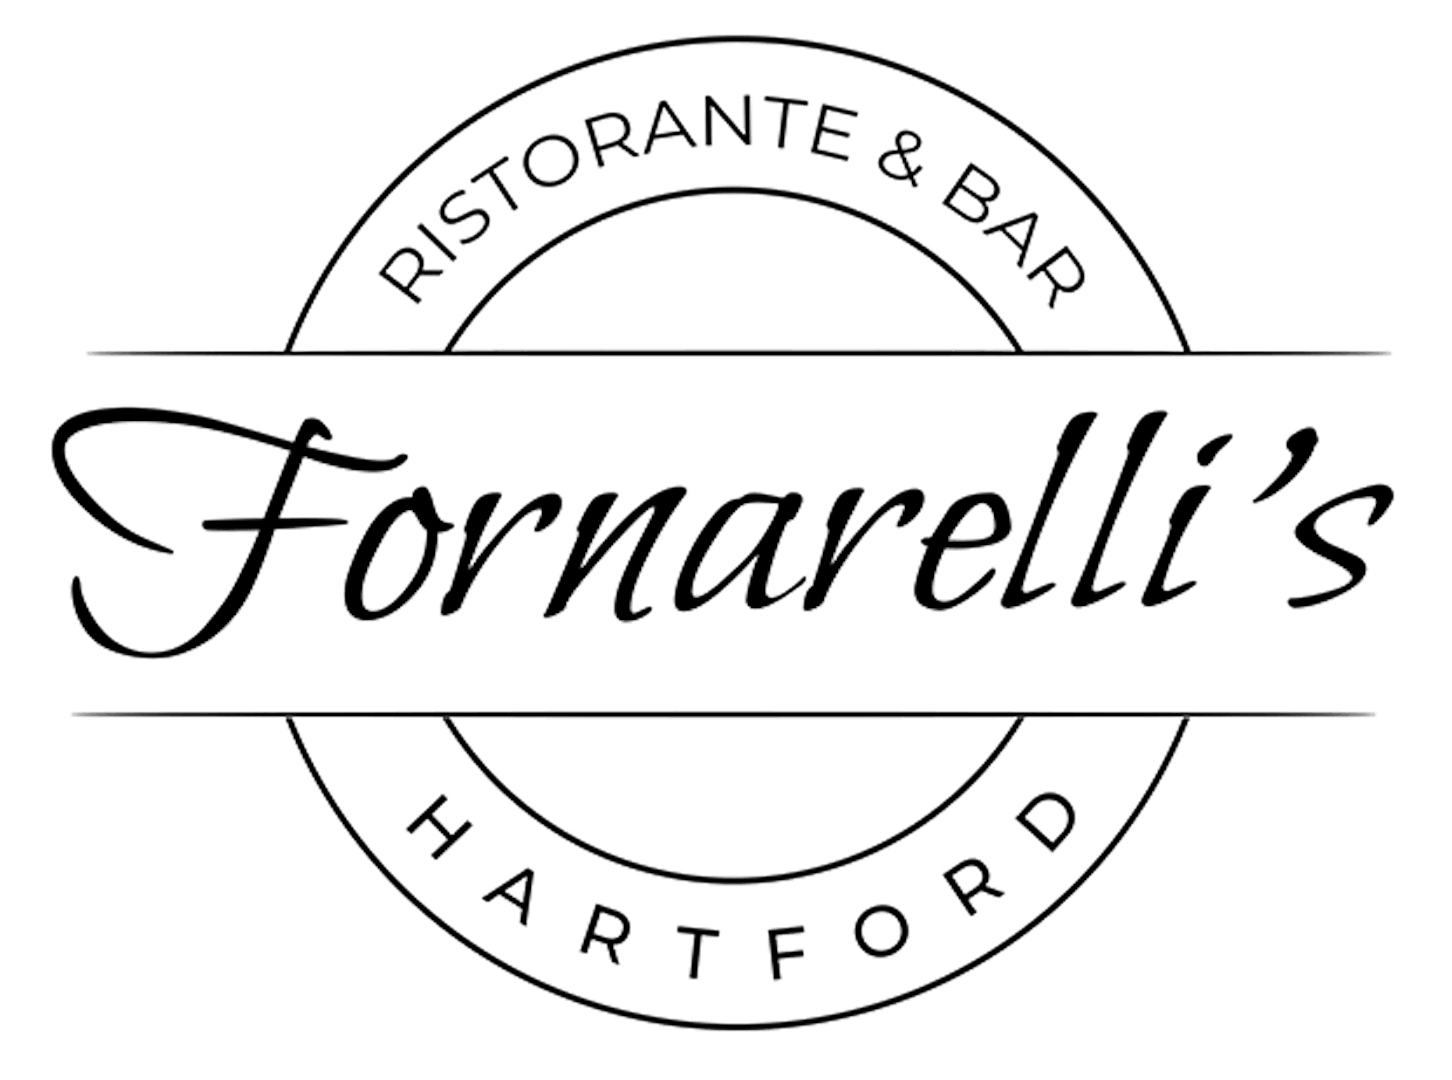 Fornarelli's Ristorante & Bar